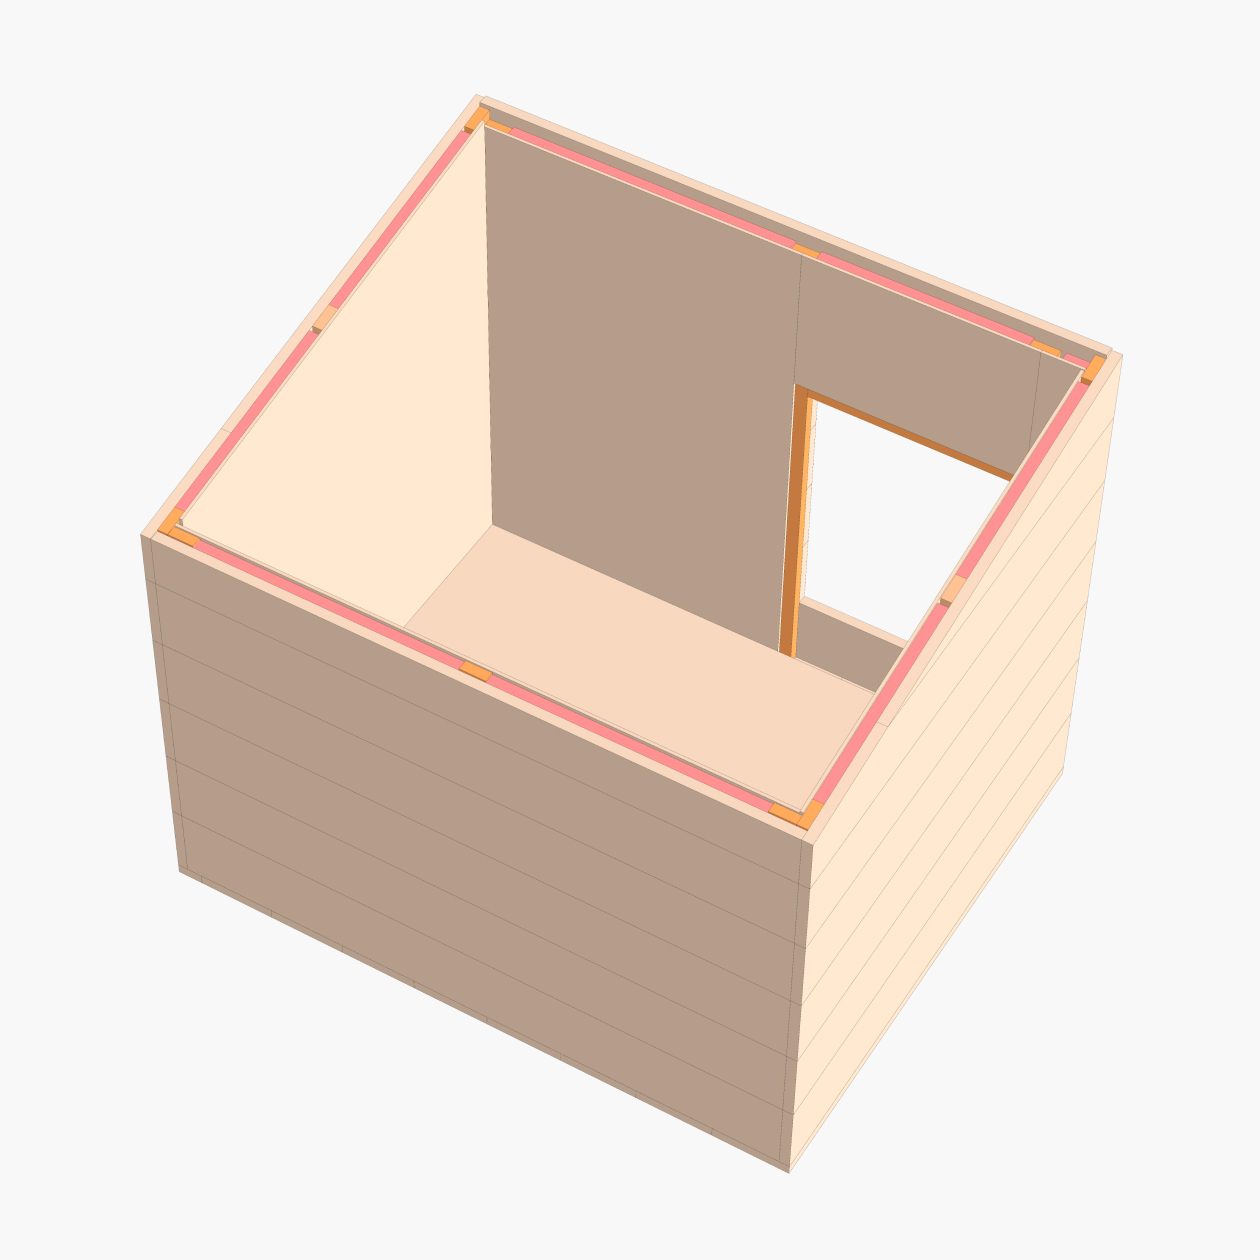 3D⁠-⁠модель обшитой изнутри будки с утеплителем